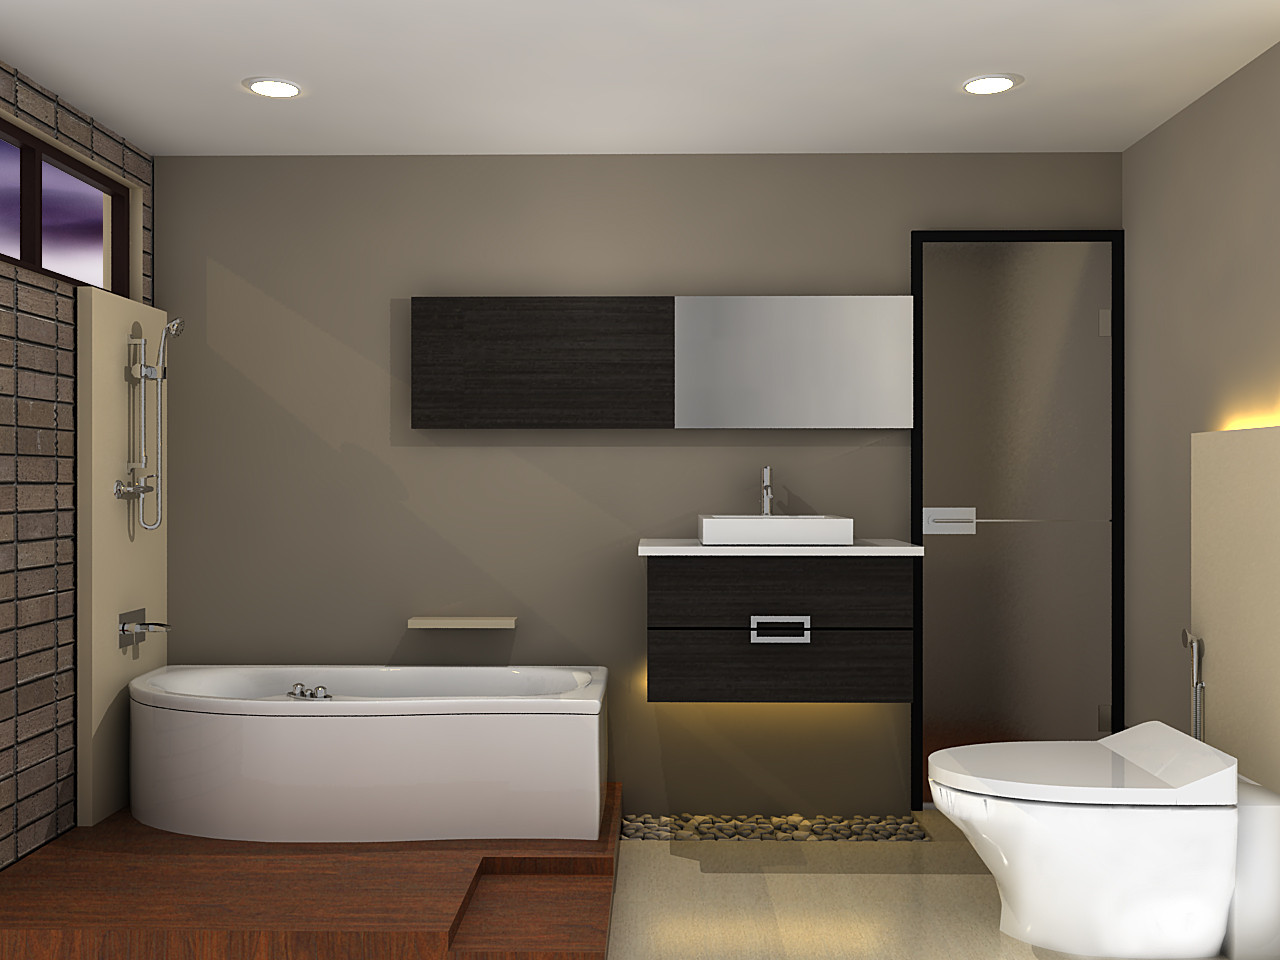 desain interior kamar mandi modern terbaru 2016